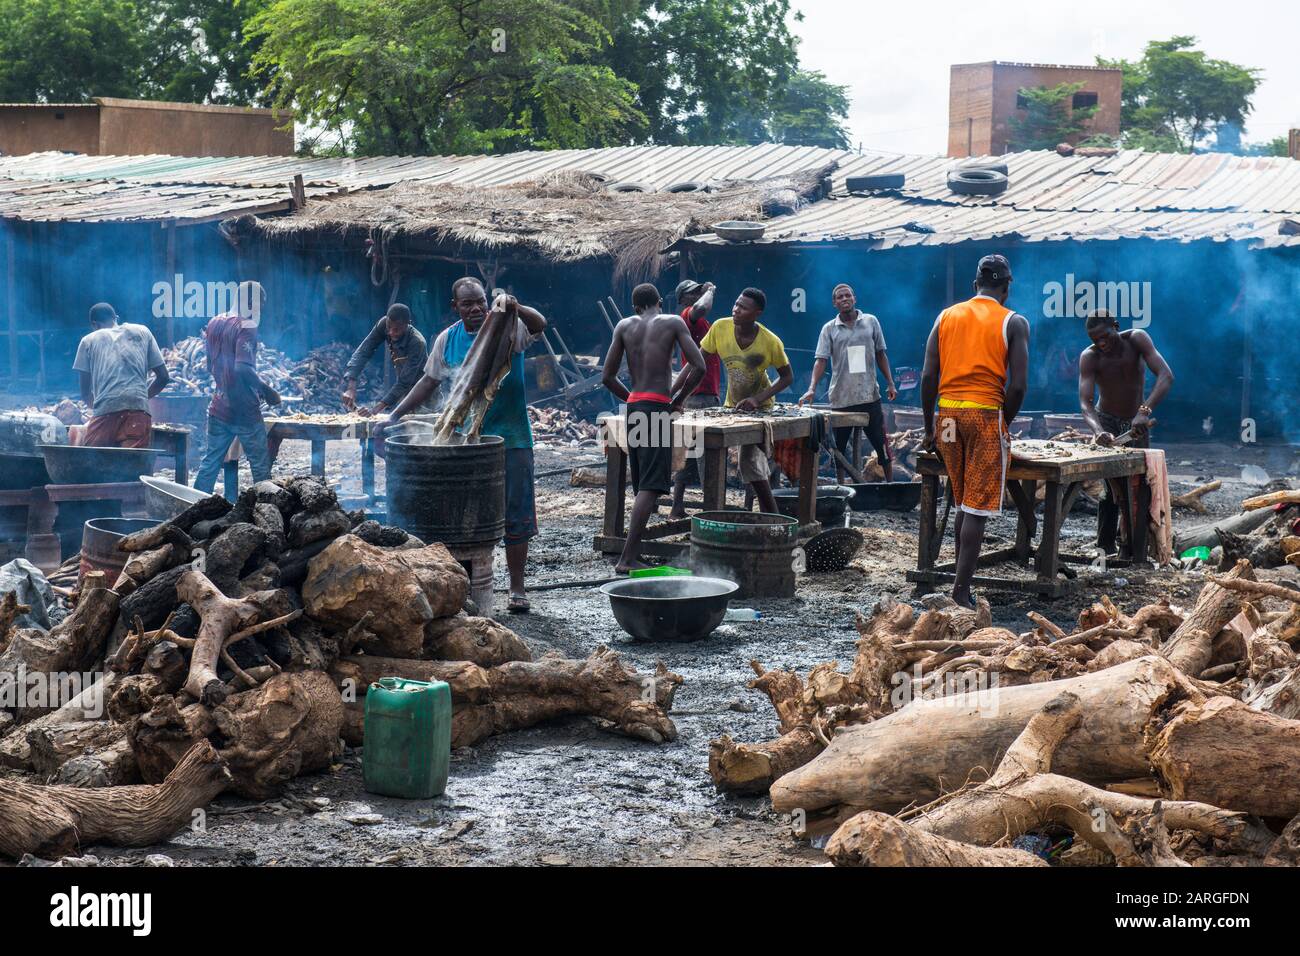 Les habitants du pays bronzent des peaux de bovins, marché central, Niamey, Niger, Afrique de l'Ouest, Afrique Banque D'Images